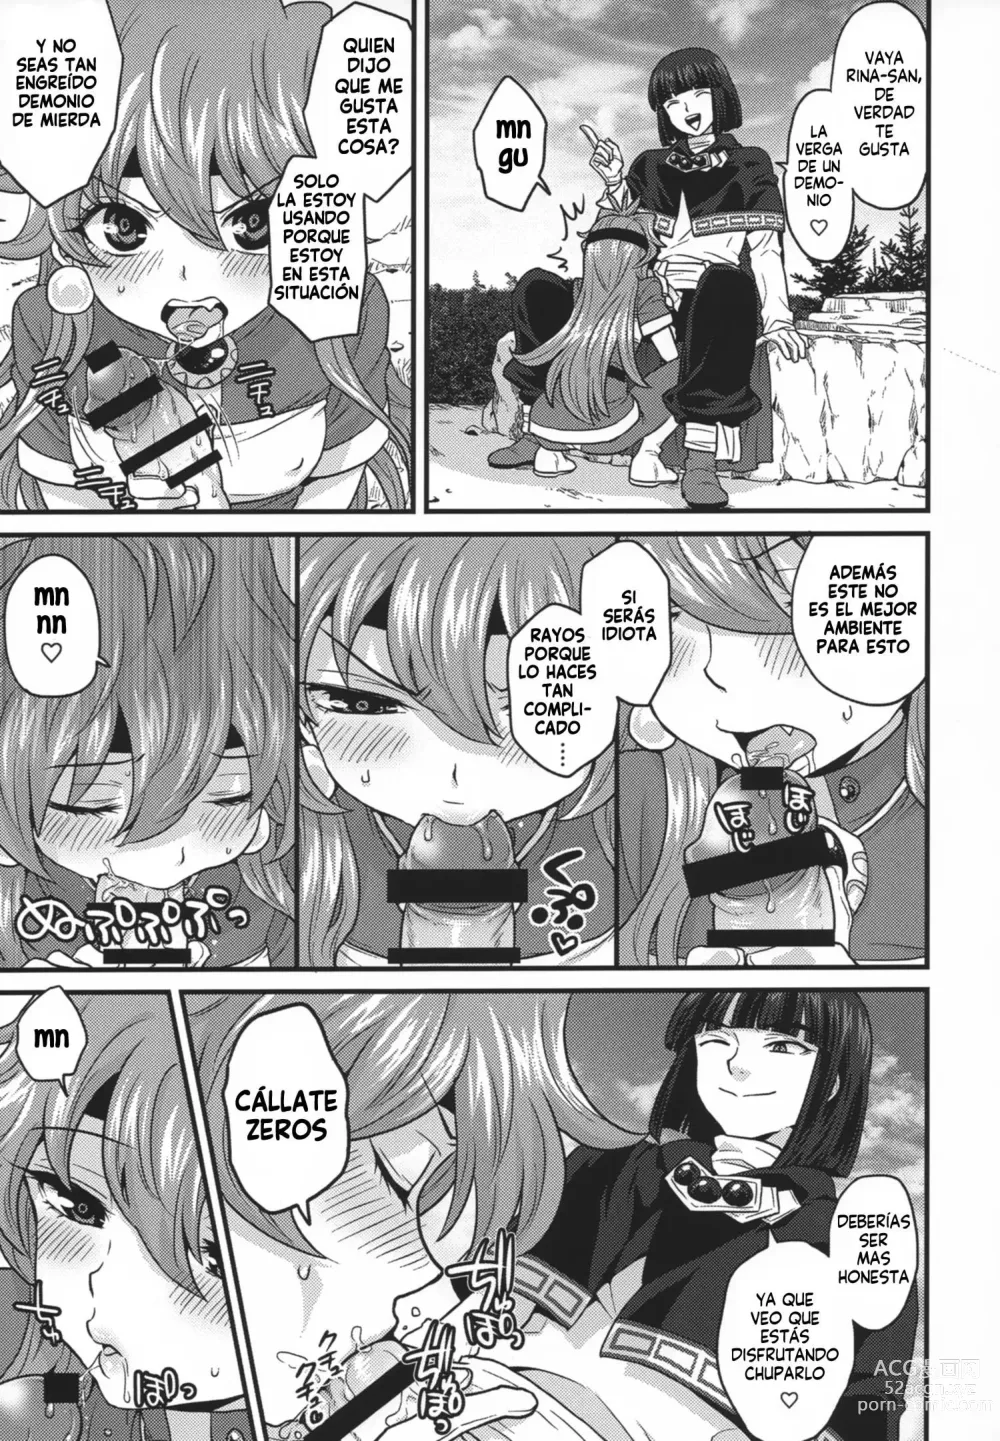 Page 9 of doujinshi Choro Sugi Desu Yo, Lina-san.